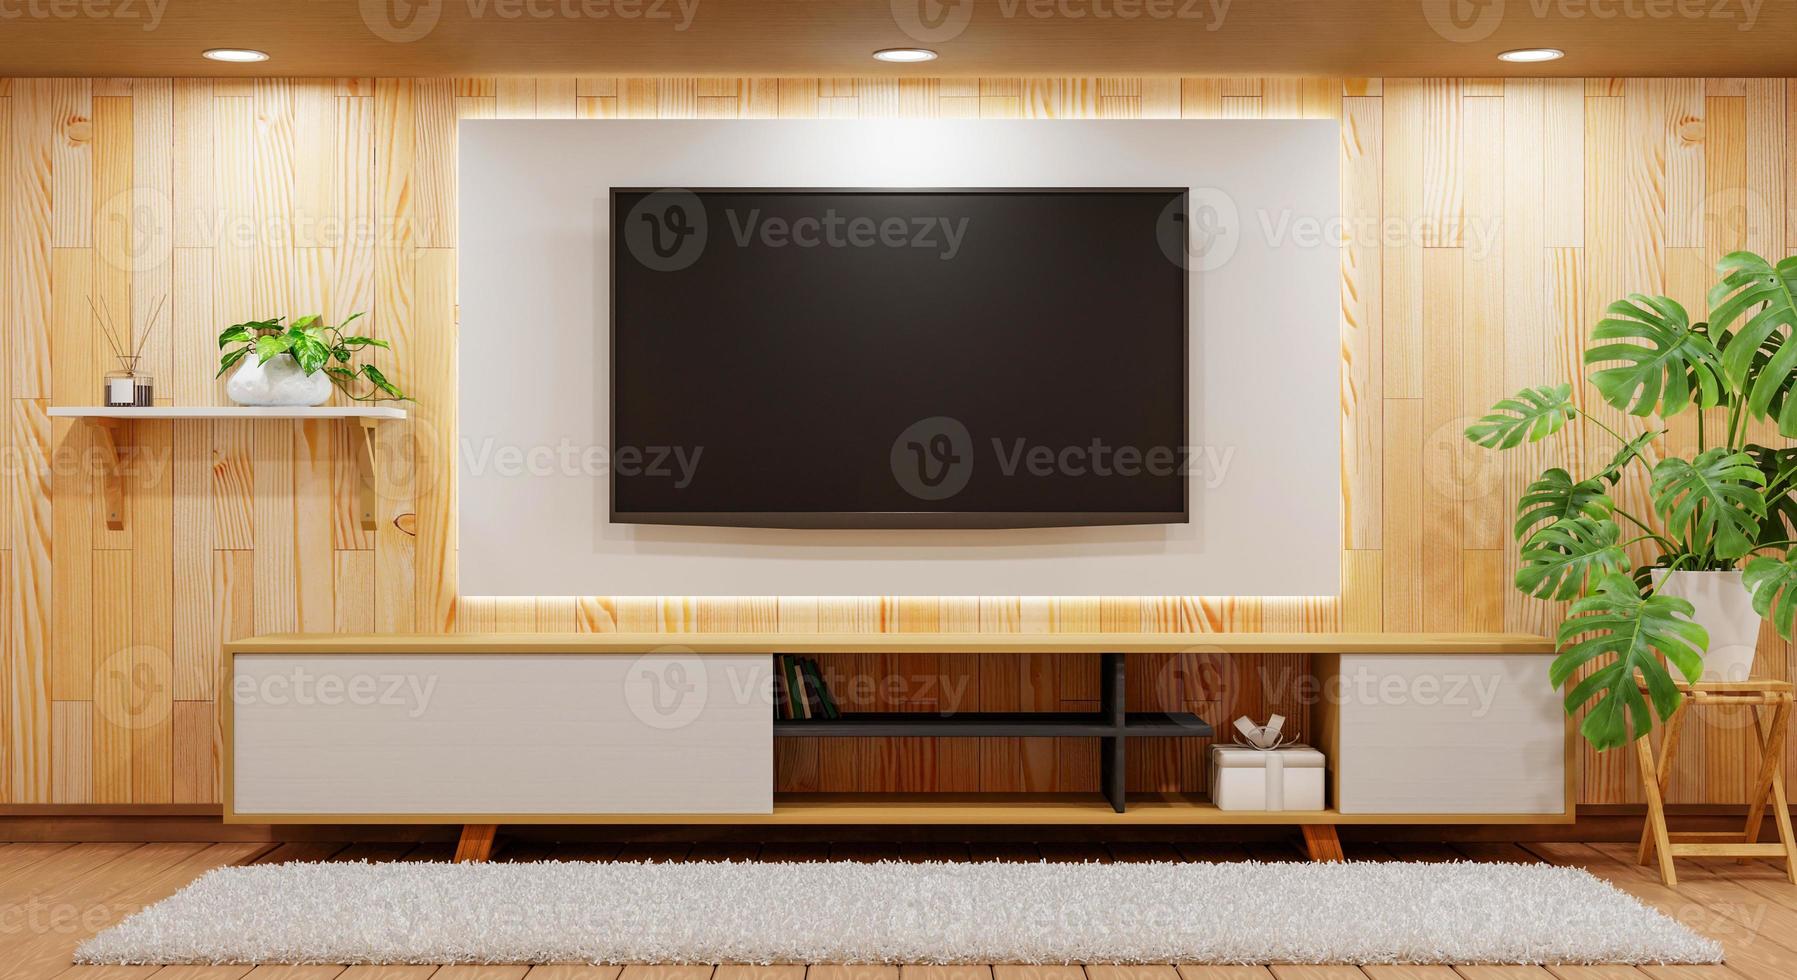 tv encima del armario de madera en una habitación vacía moderna con moqueta de plantas y lámpara de luz sobre fondo de madera. tema de estilo japonés. arquitectura y concepto interior. representación de ilustración 3d foto